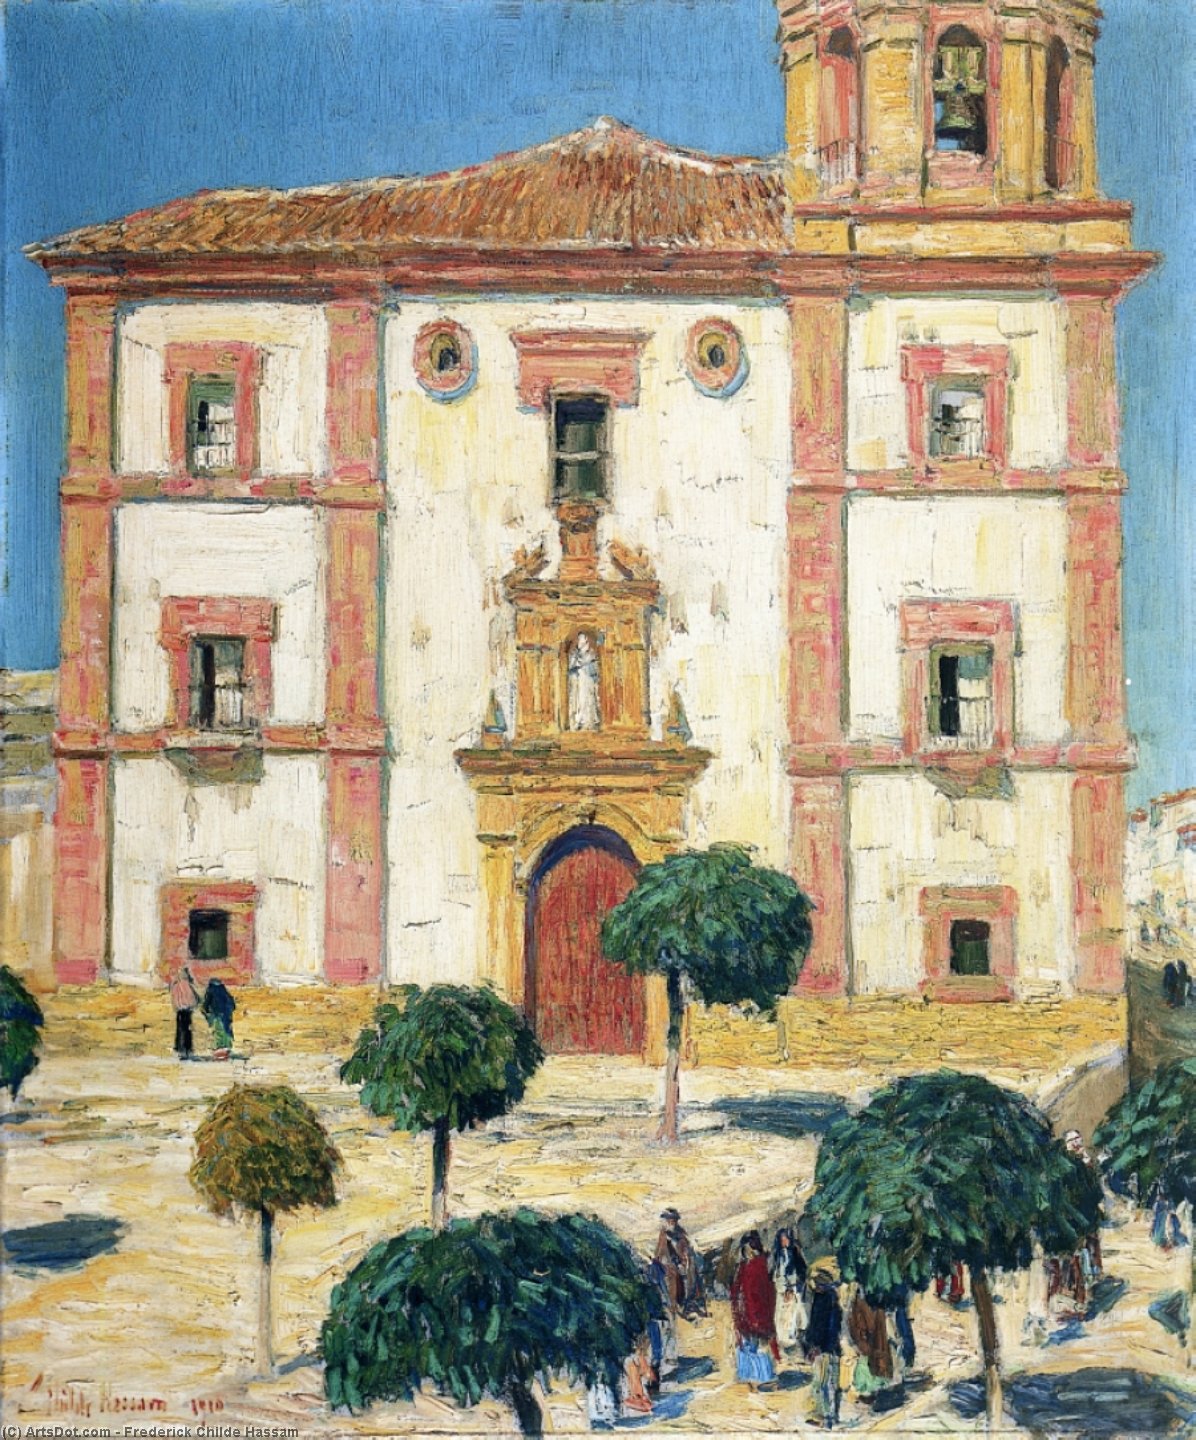 Compra Riproduzioni D'arte Del Museo Cattedrale di Ronda, 1910 di Frederick Childe Hassam (1859-1935, United States) | ArtsDot.com